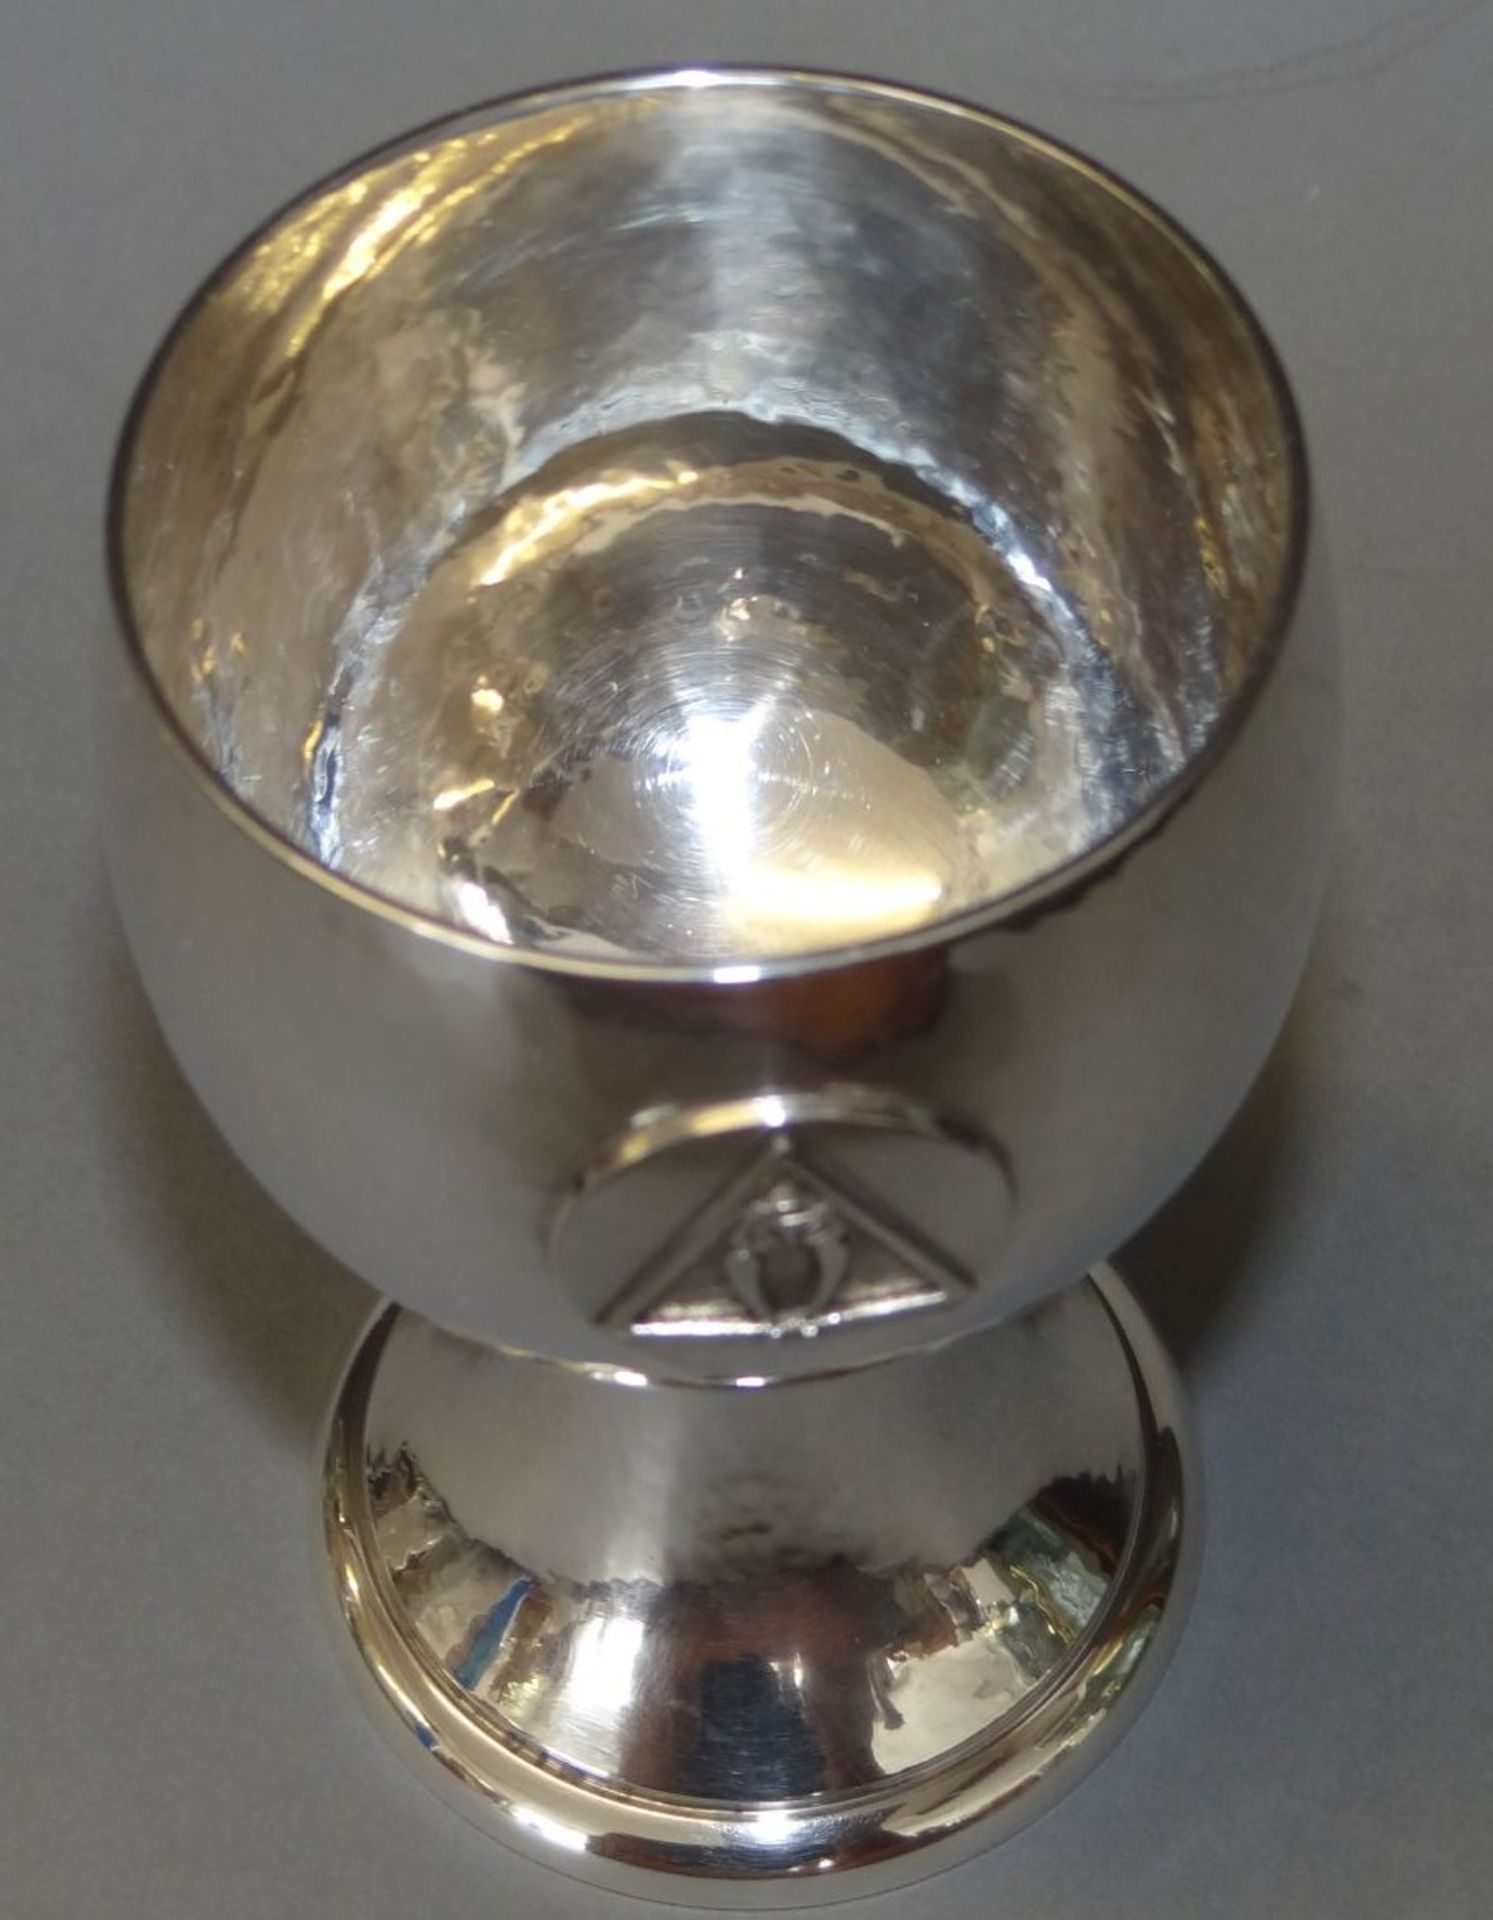 Silberpokal "Koch&Bergfeld" mit Freimaurer-Zeichen?, H-12,5 cm, 184 gr, Hammerschlagdekor - Bild 3 aus 4